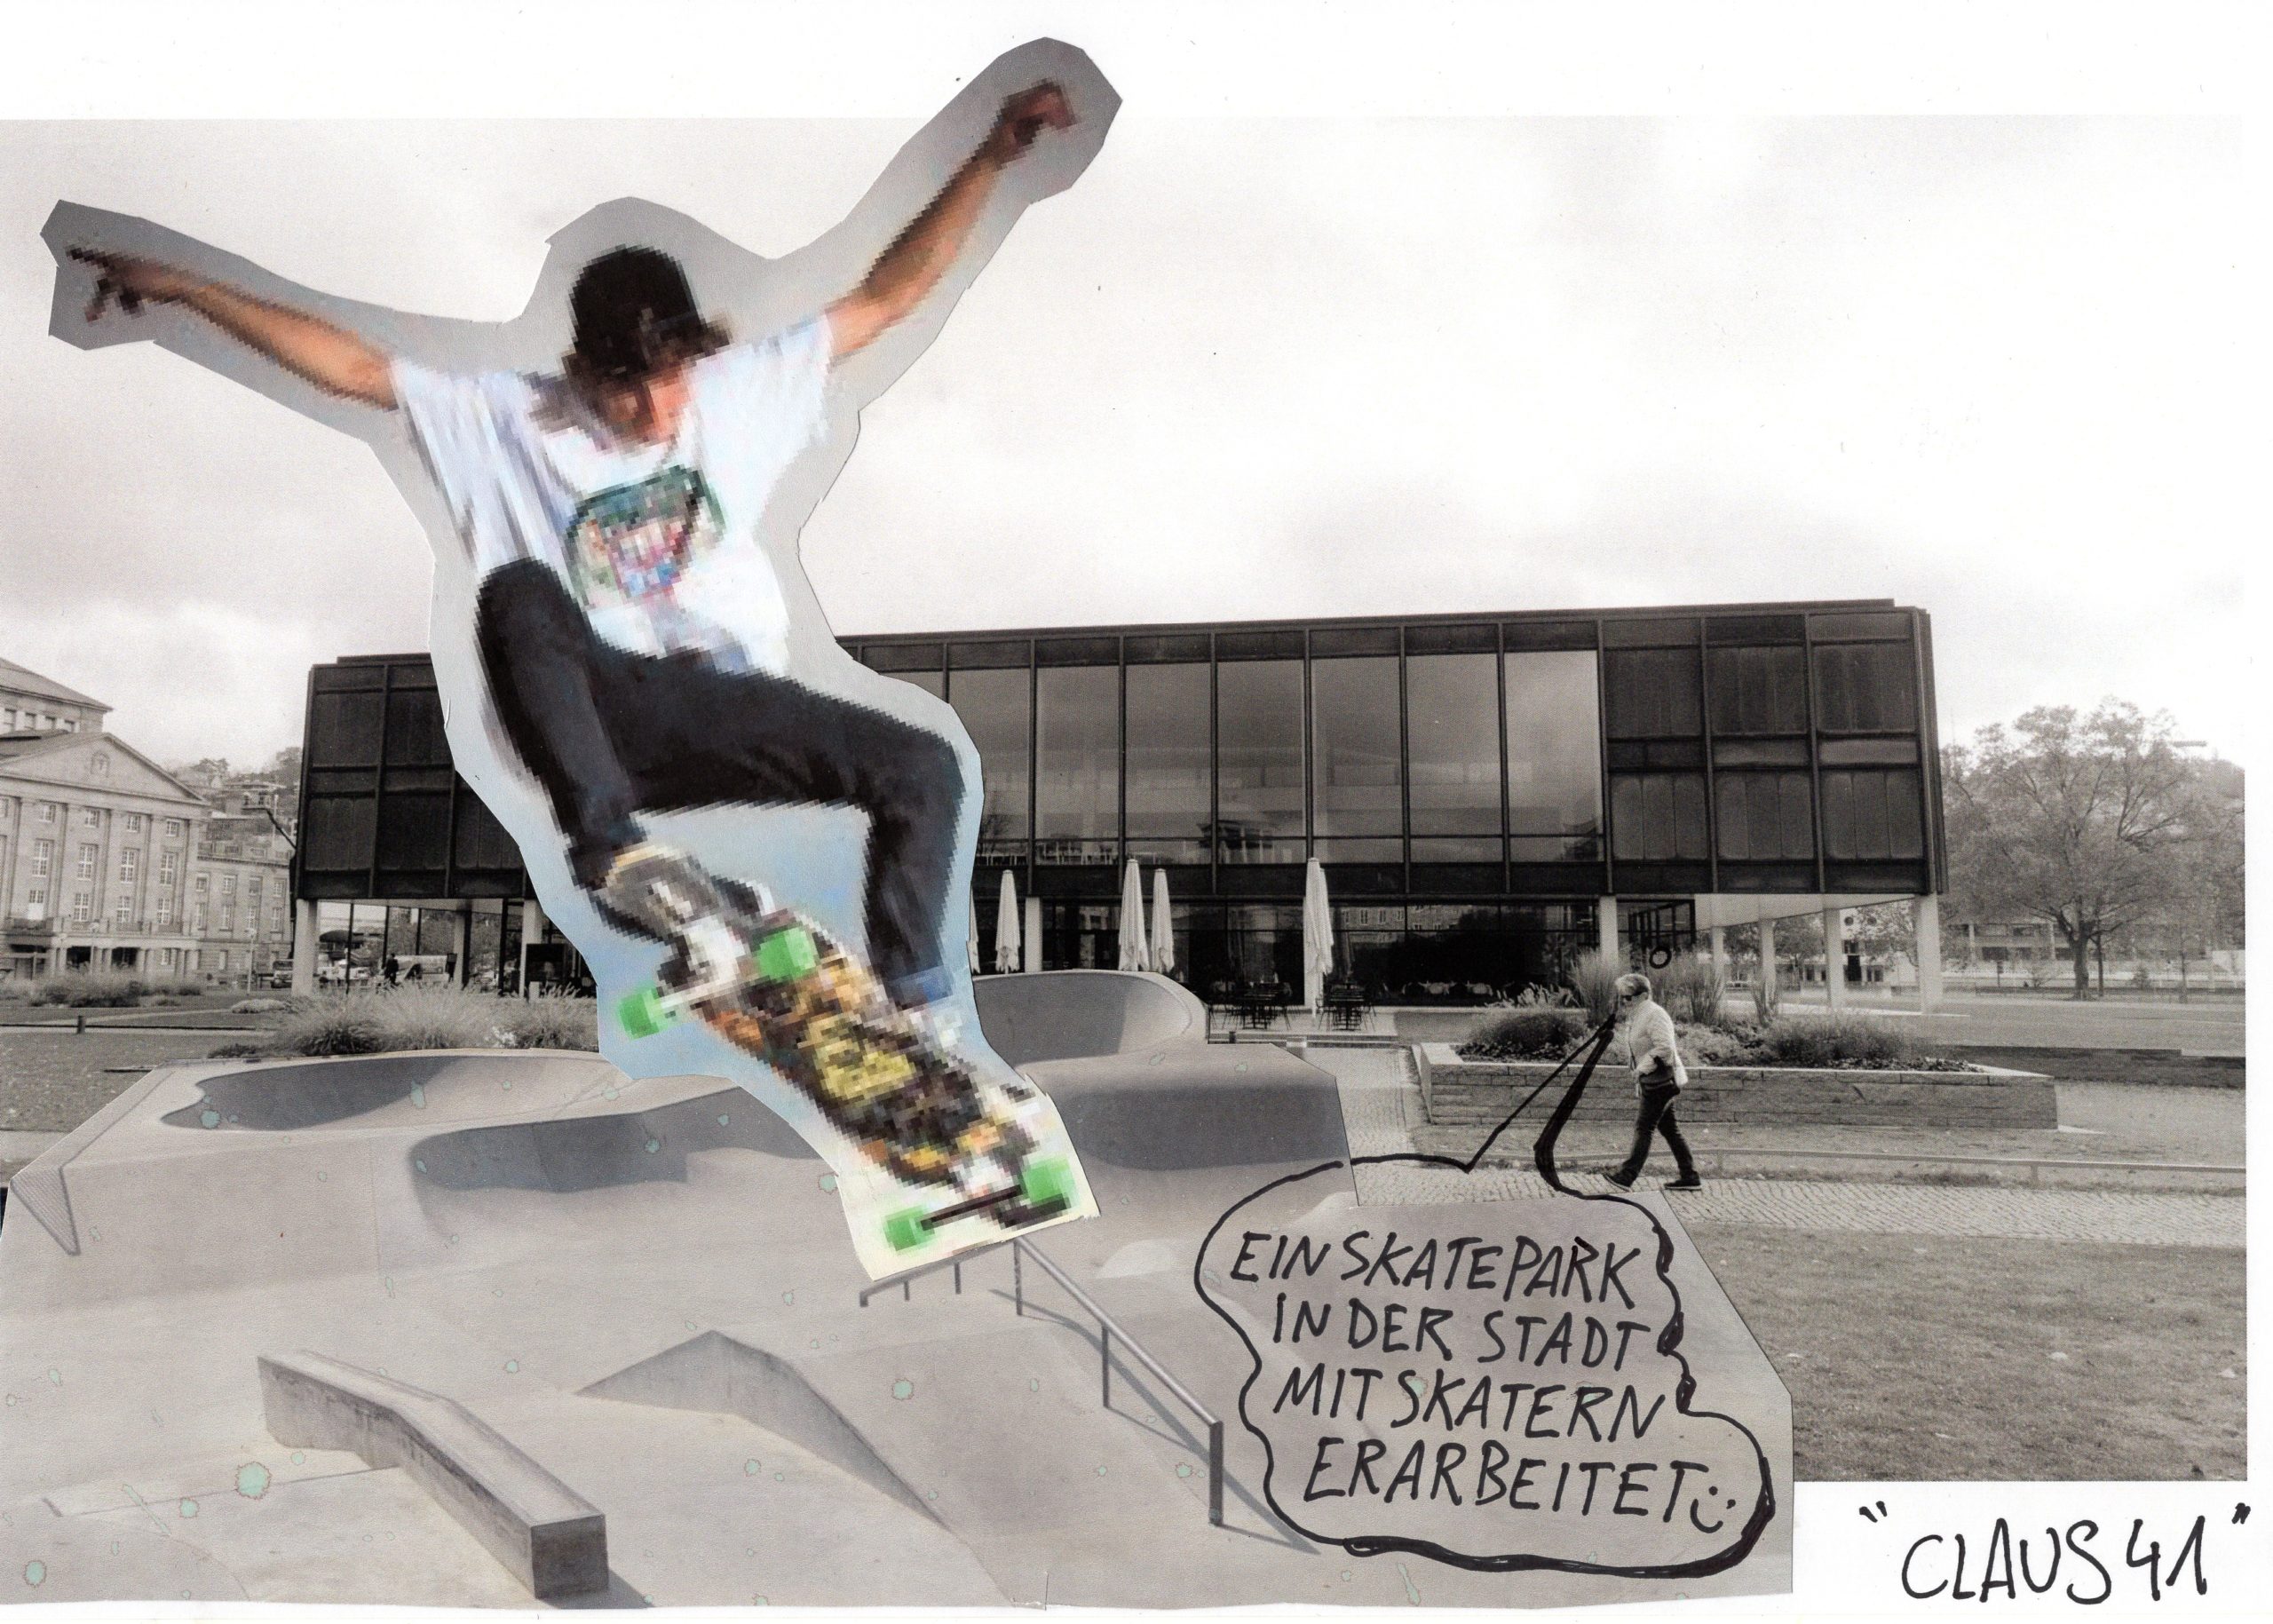 Das Bild zeigt den Landtag, davor sind Skateboardrampen angebracht, ein junger Mann macht einen Skateboardtrick.